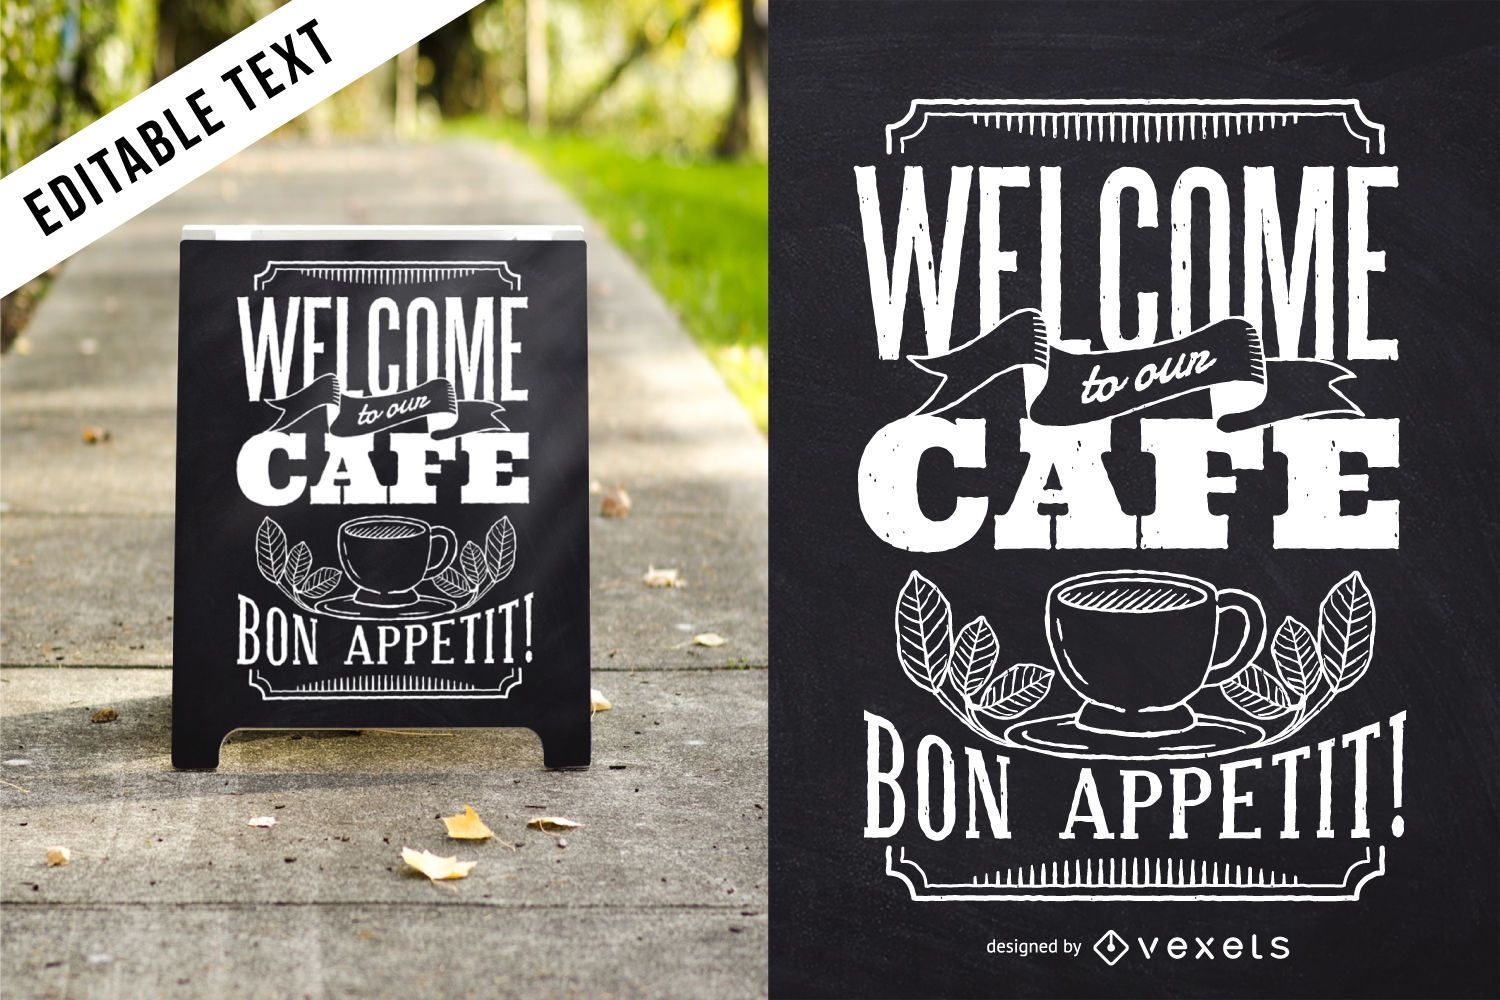 Design de caf? com letras Bon Appetit